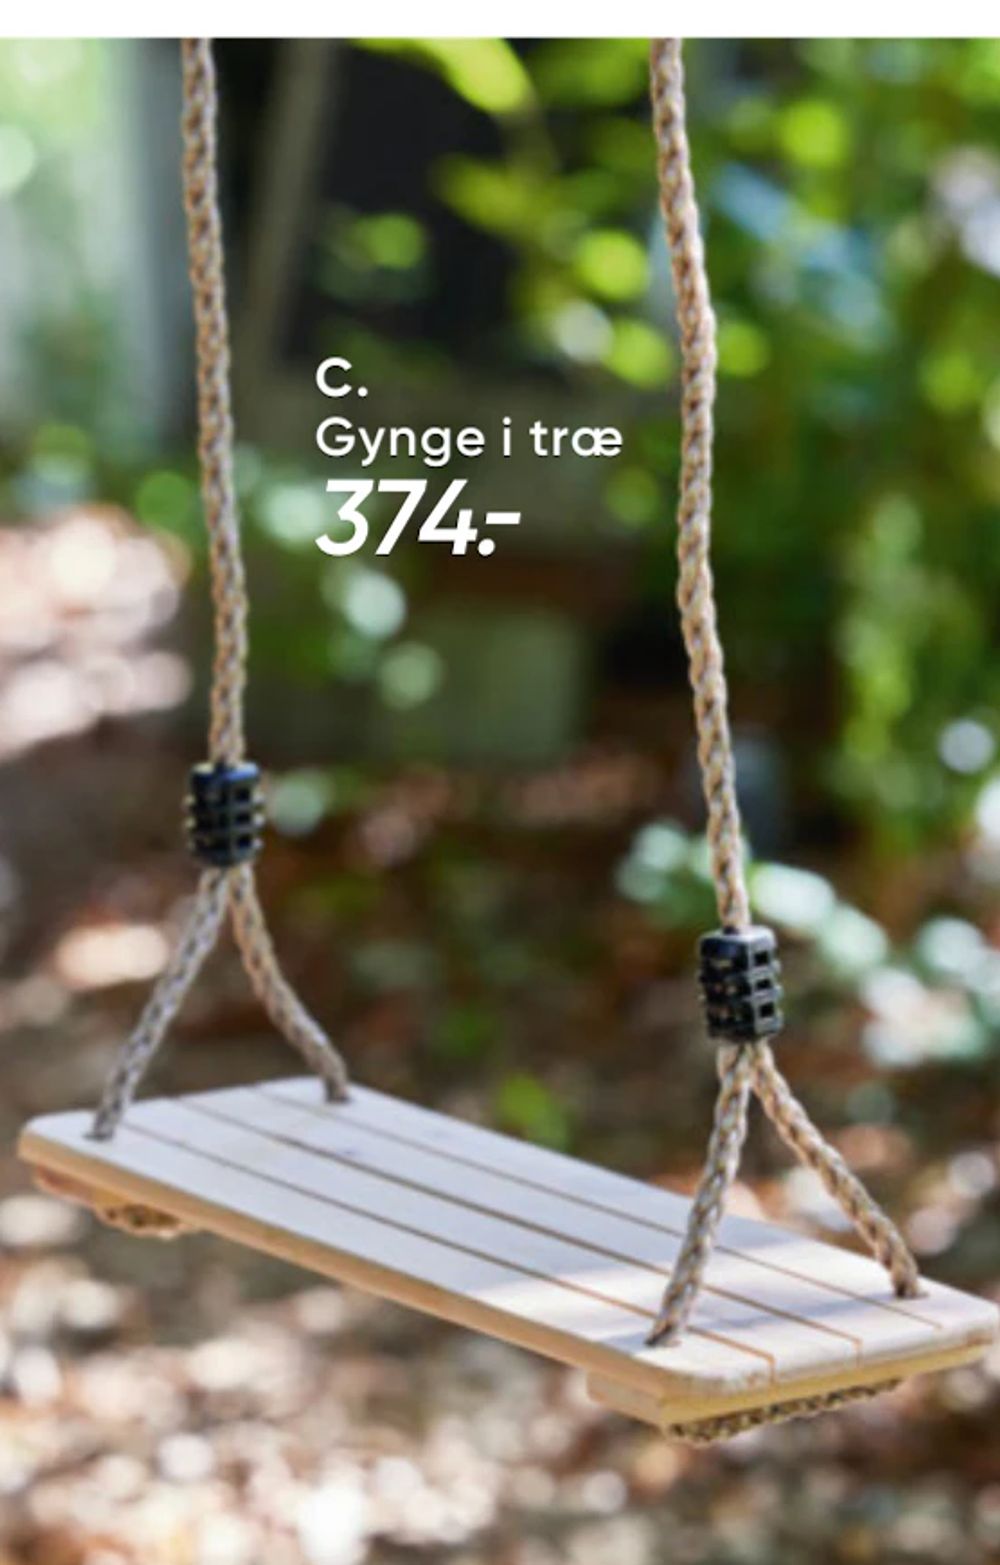 Tilbud på Gynge i træ fra Bilka til 374 kr.